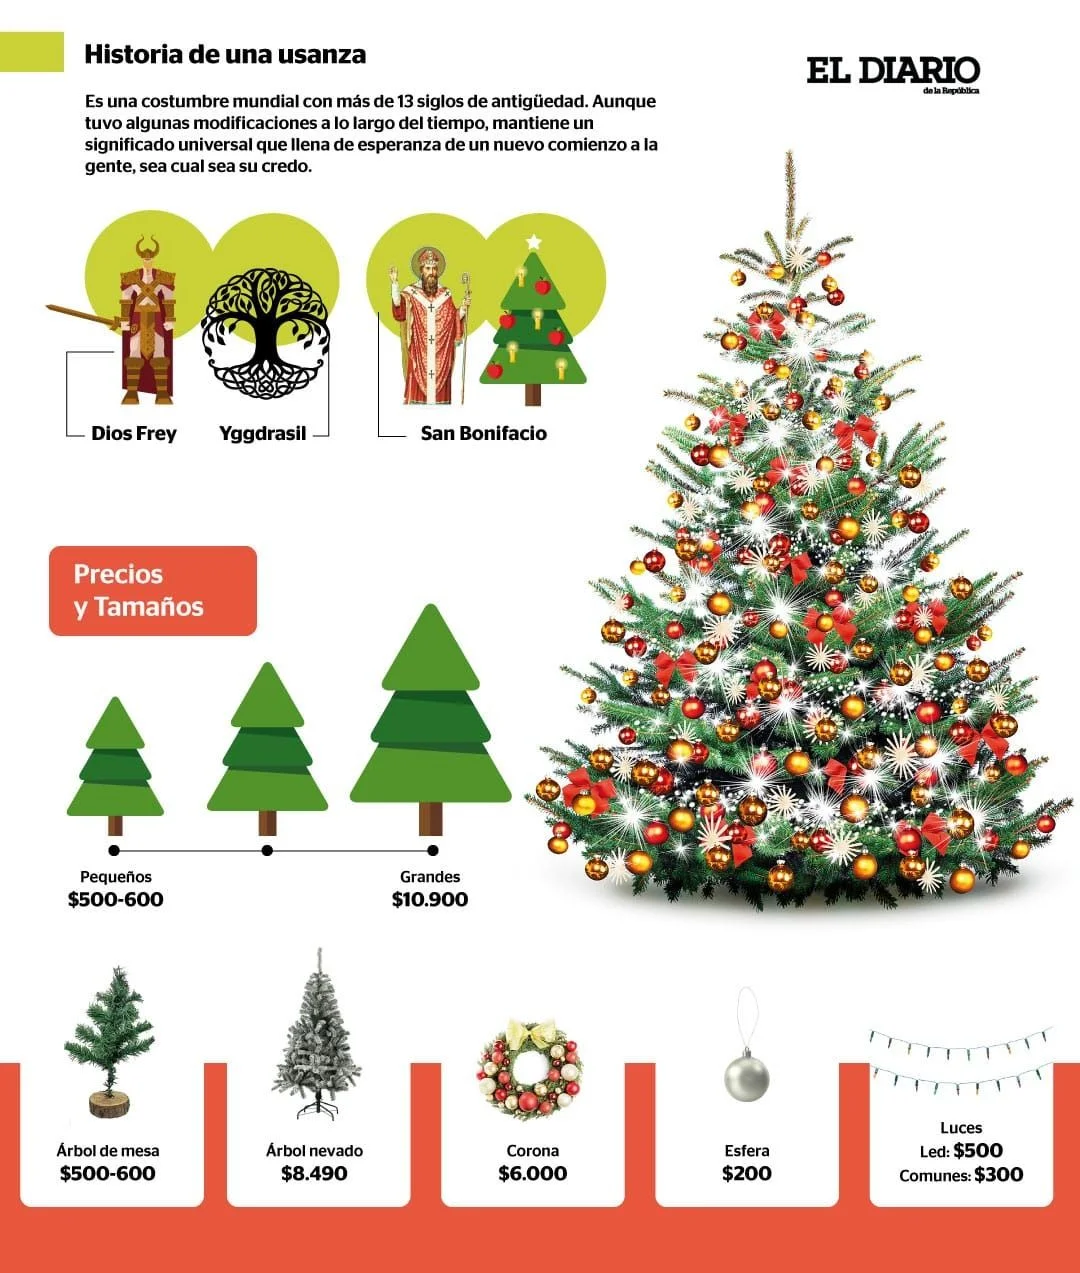 El árbol de Navidad, una tradición cristiana de raíces paganas | El Diario  de la República